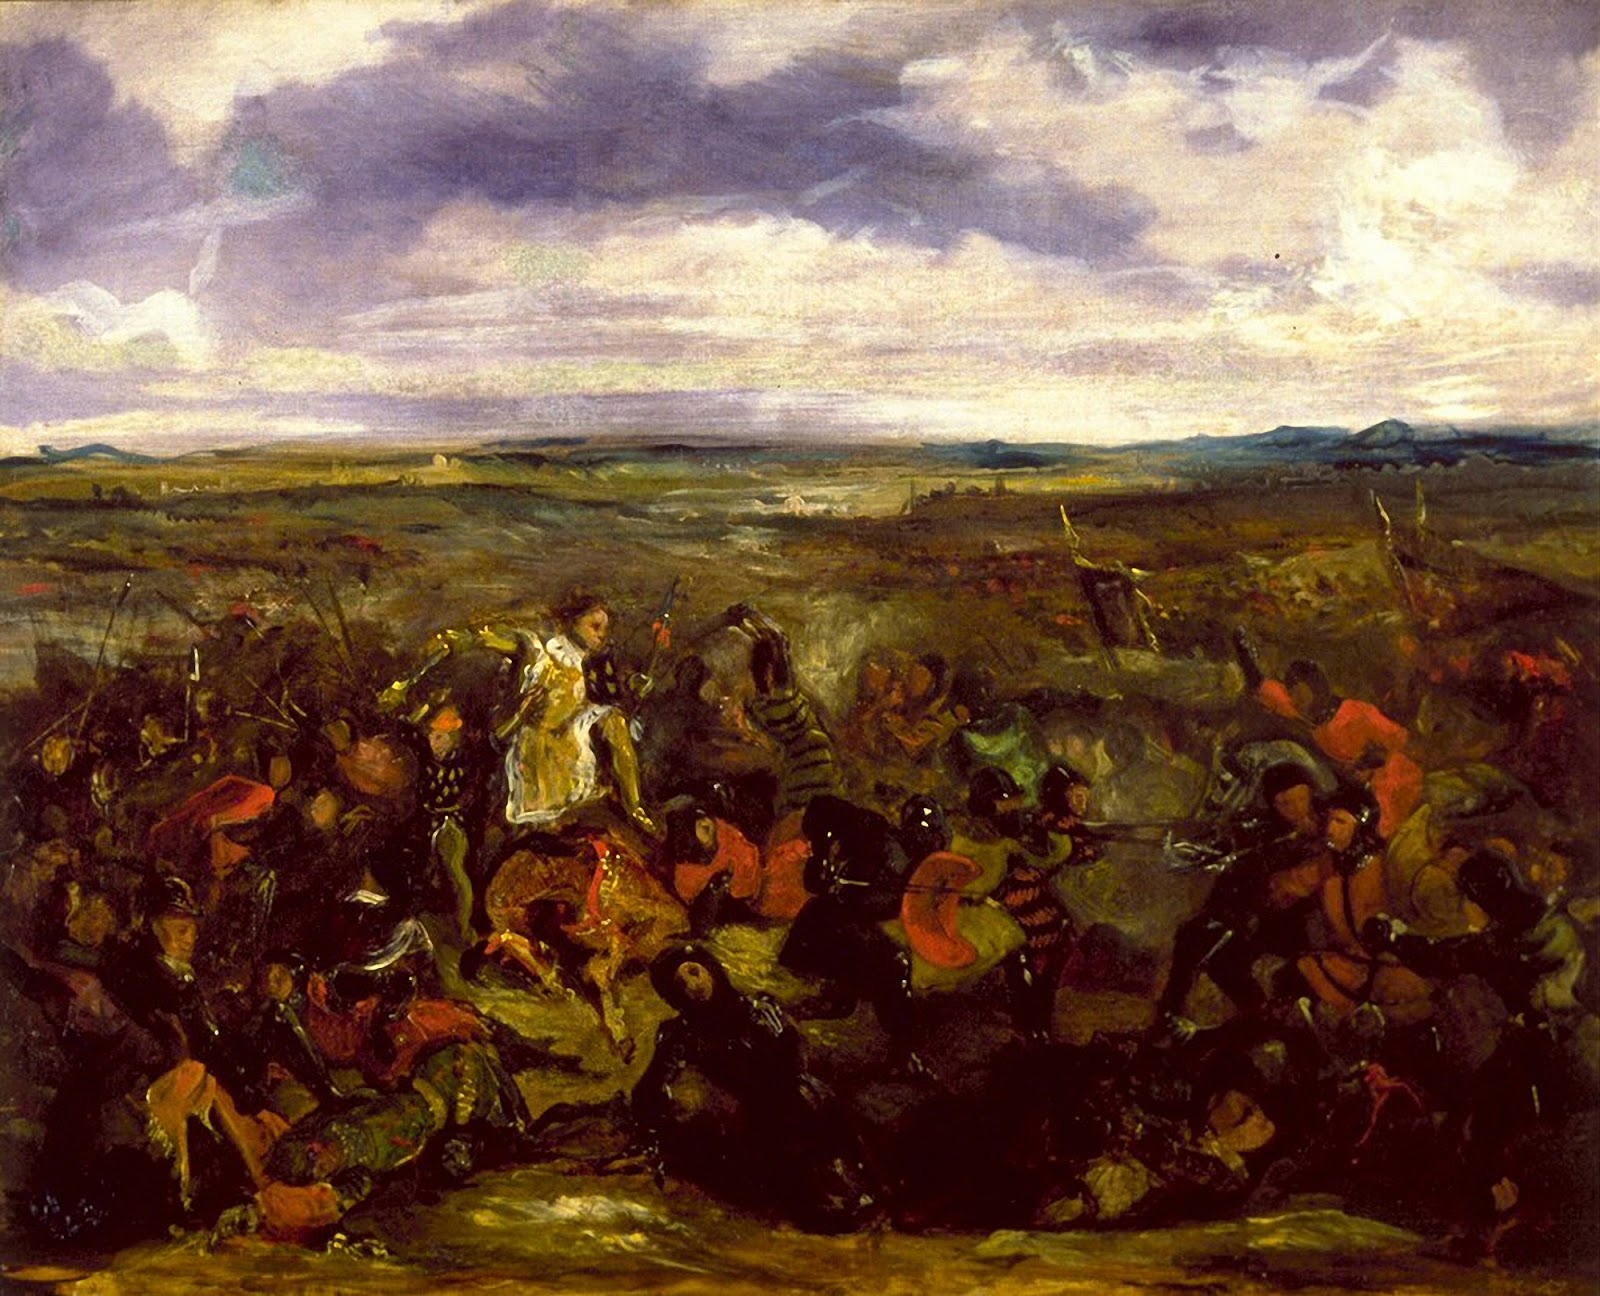 Eugene+Delacroix-1798-1863 (203).jpg